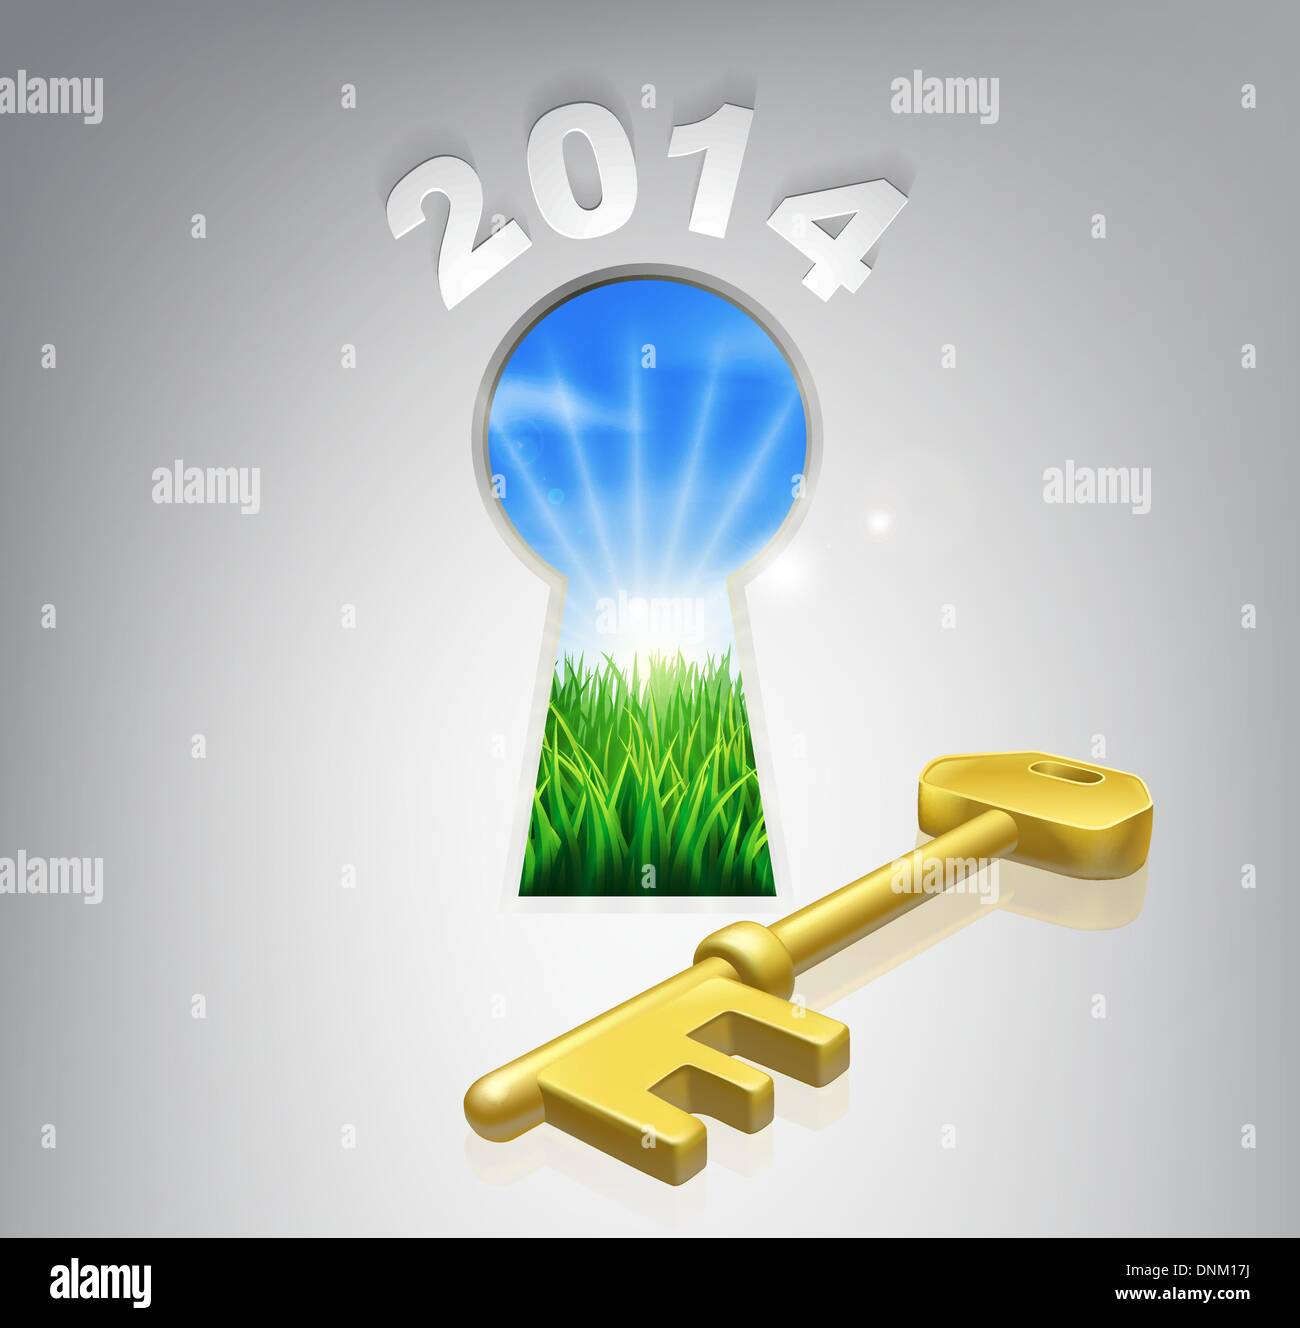 La chiave per il futuro 2014 Nozione di una serratura con una nuova alba sul paesaggio verdeggiante e chiave d'oro Illustrazione Vettoriale